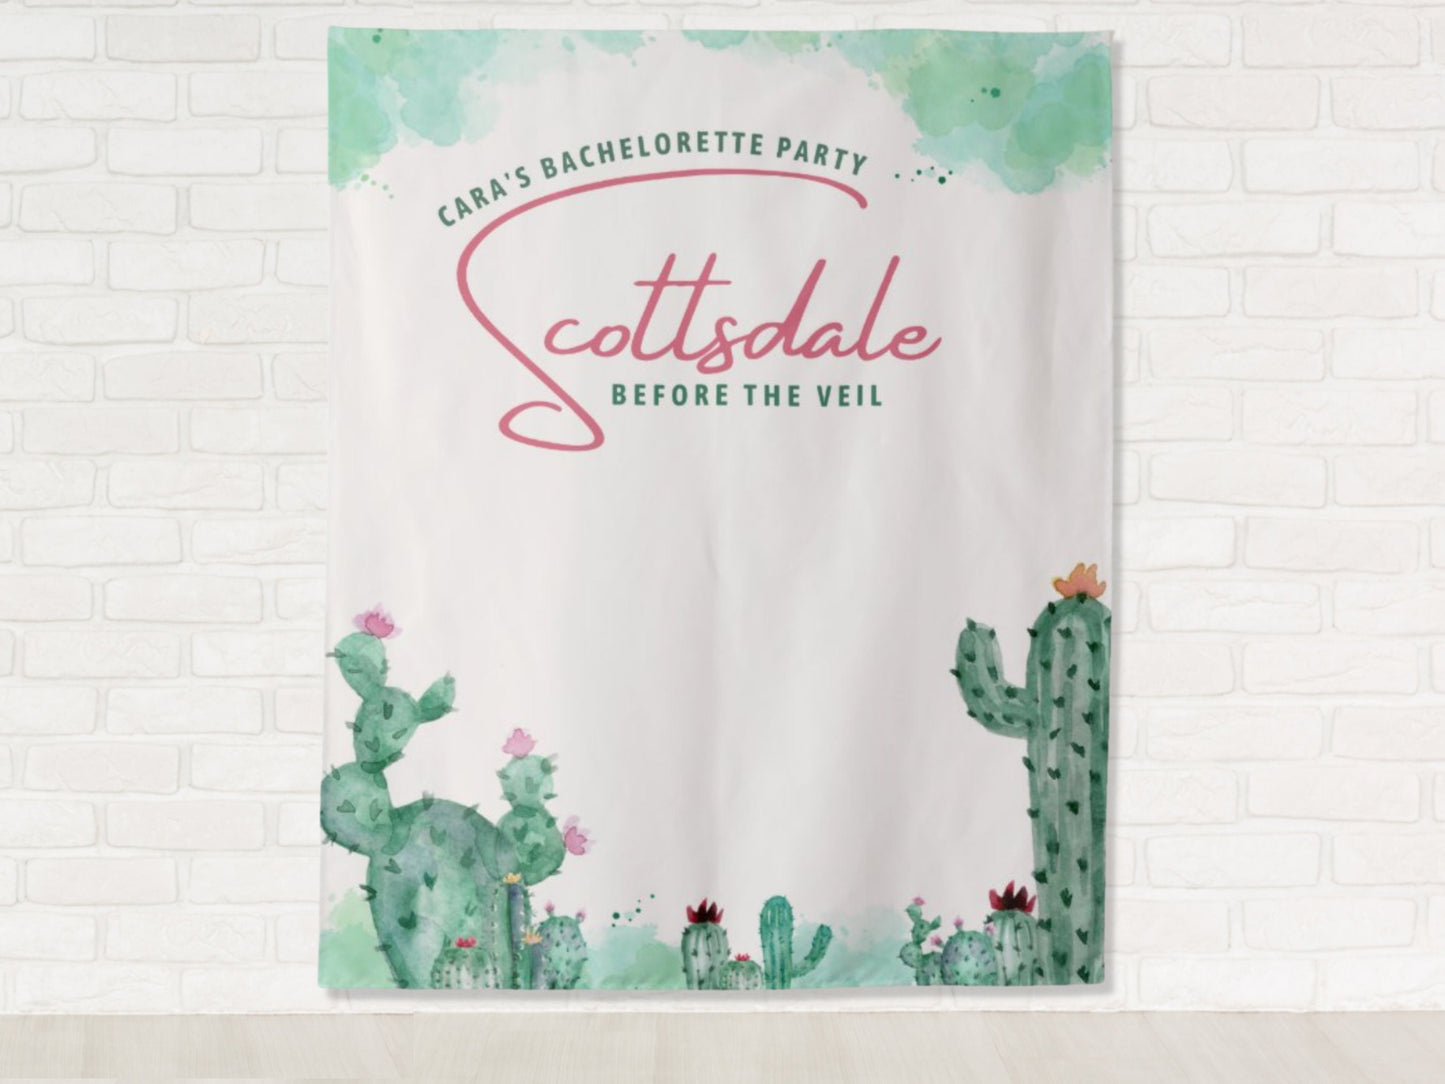 Scottsdale Before the Veil Bachelorette Party Personalized Backdrop | Cactus Bachelorette Party Décor